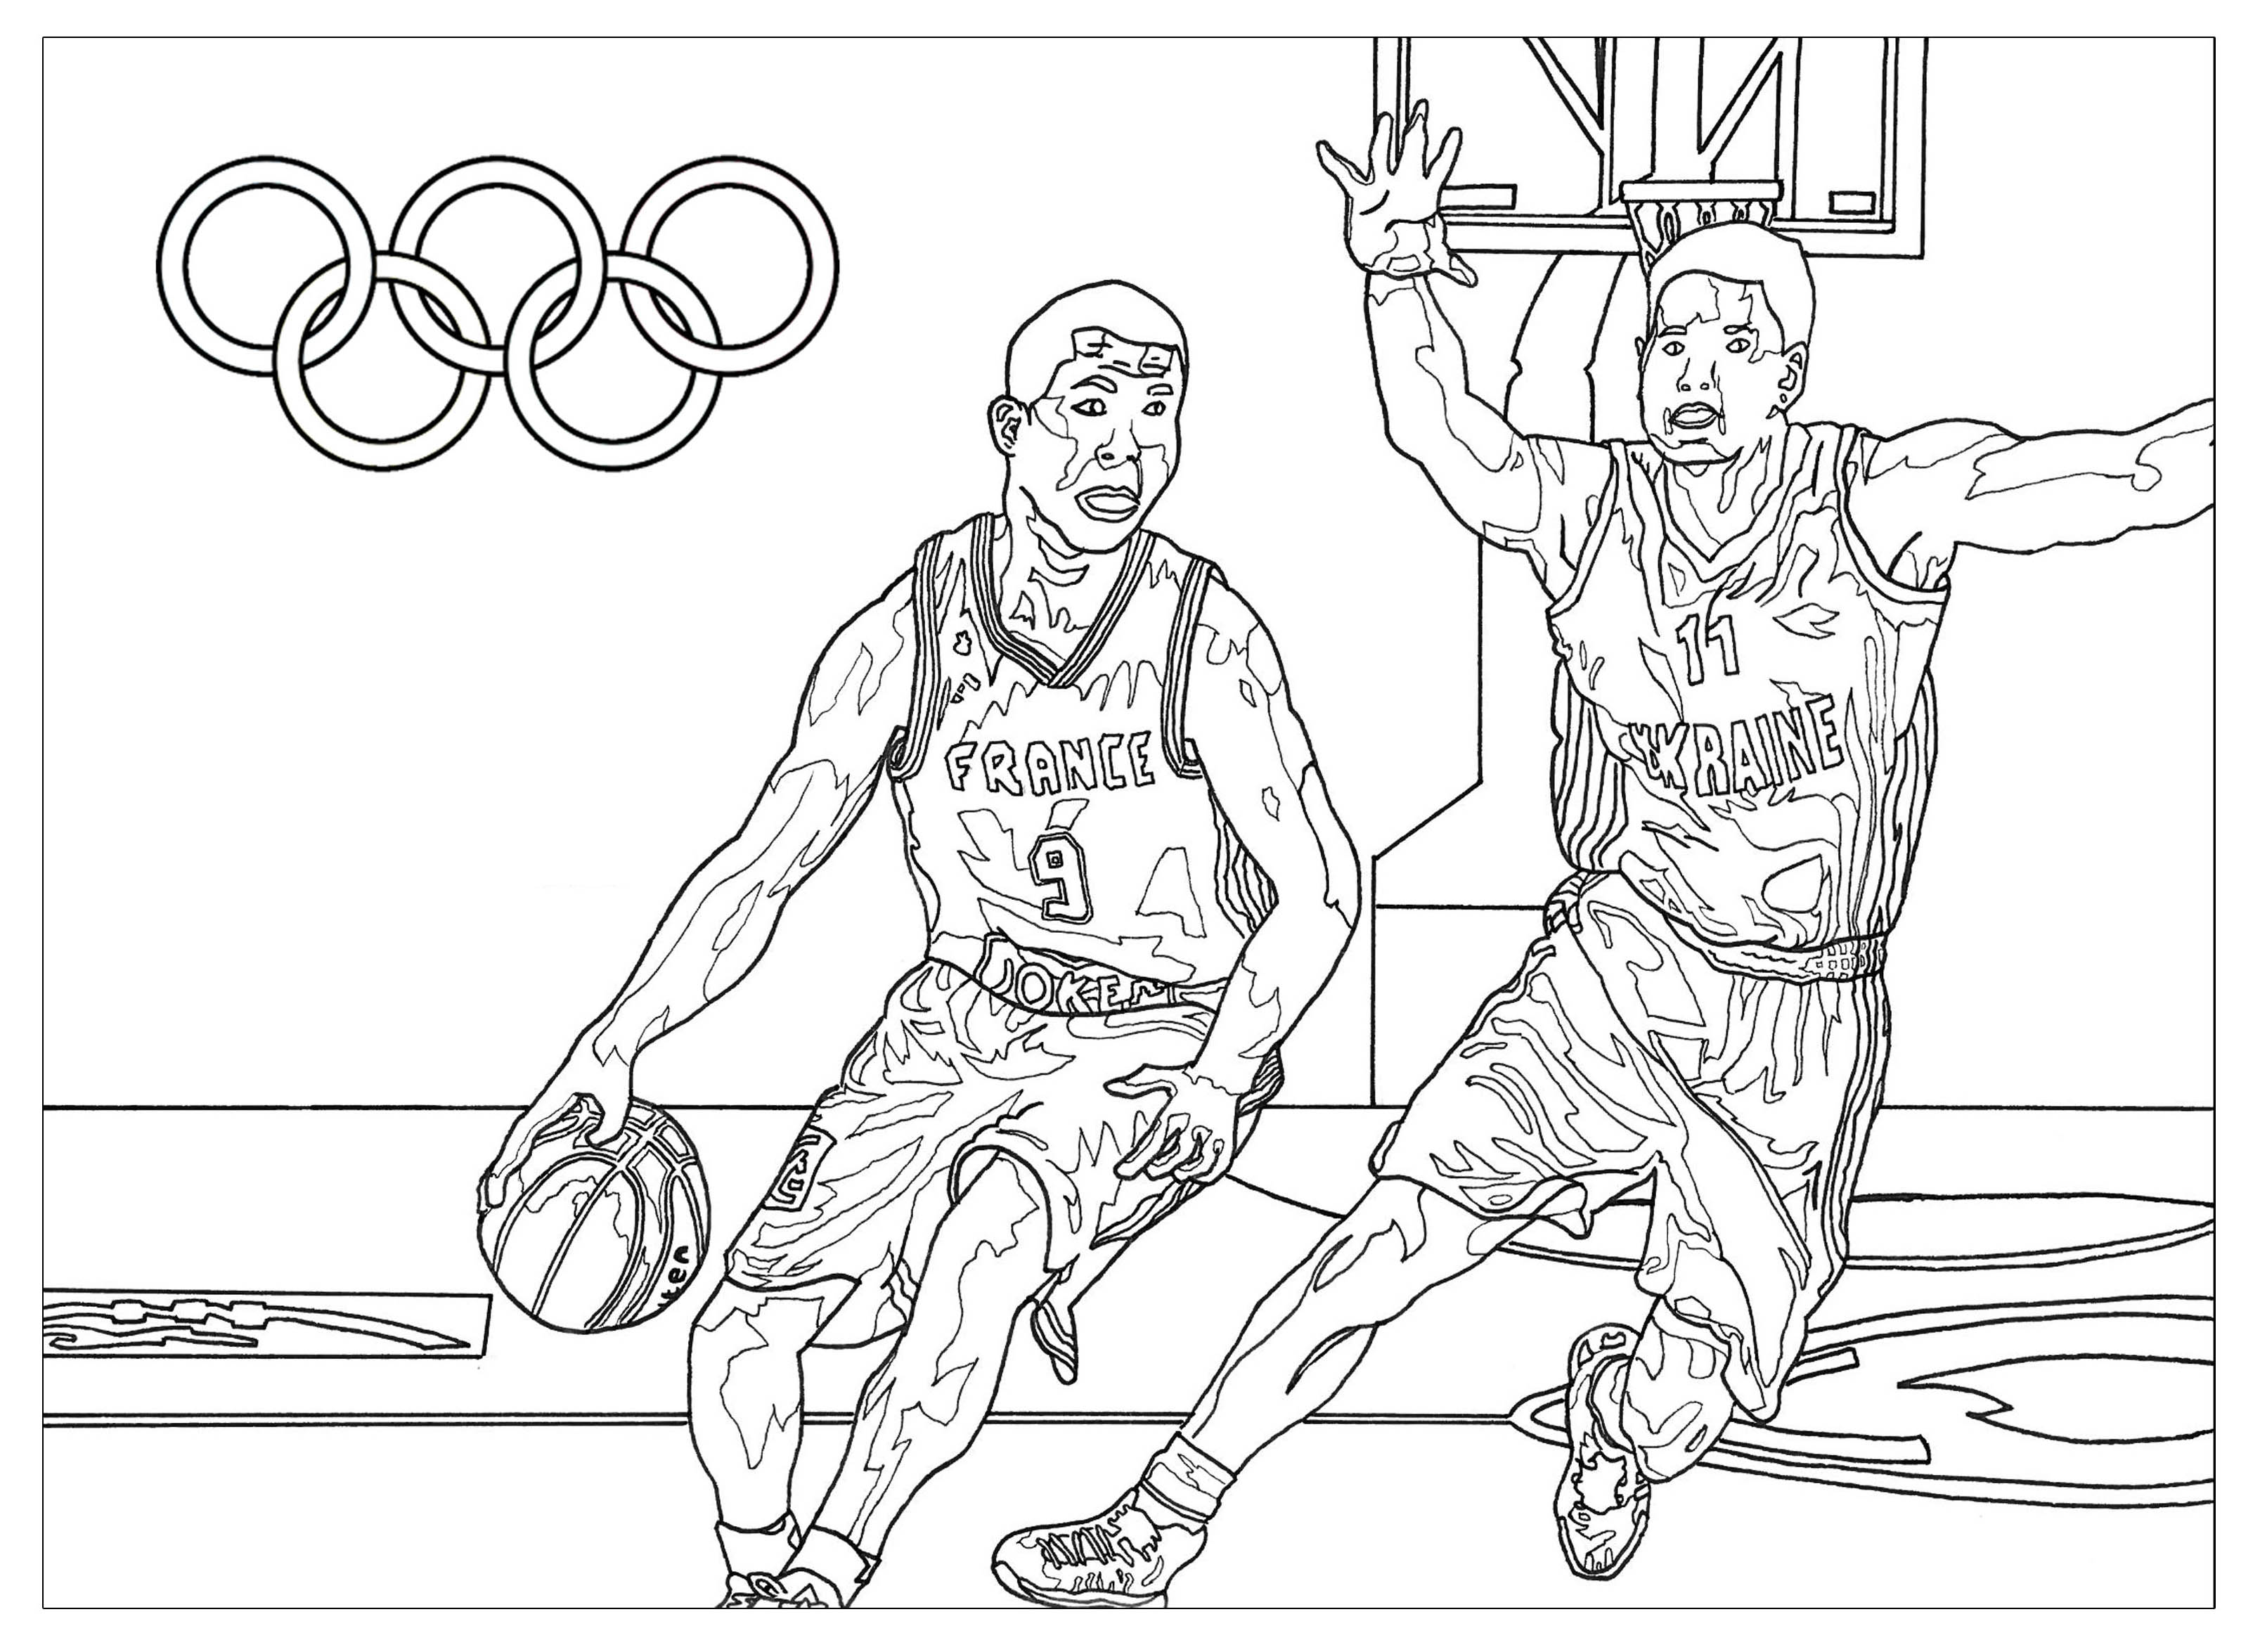 Dibujos para colorear gratis de Juegos Olímpicos para imprimir y colorear, para niños